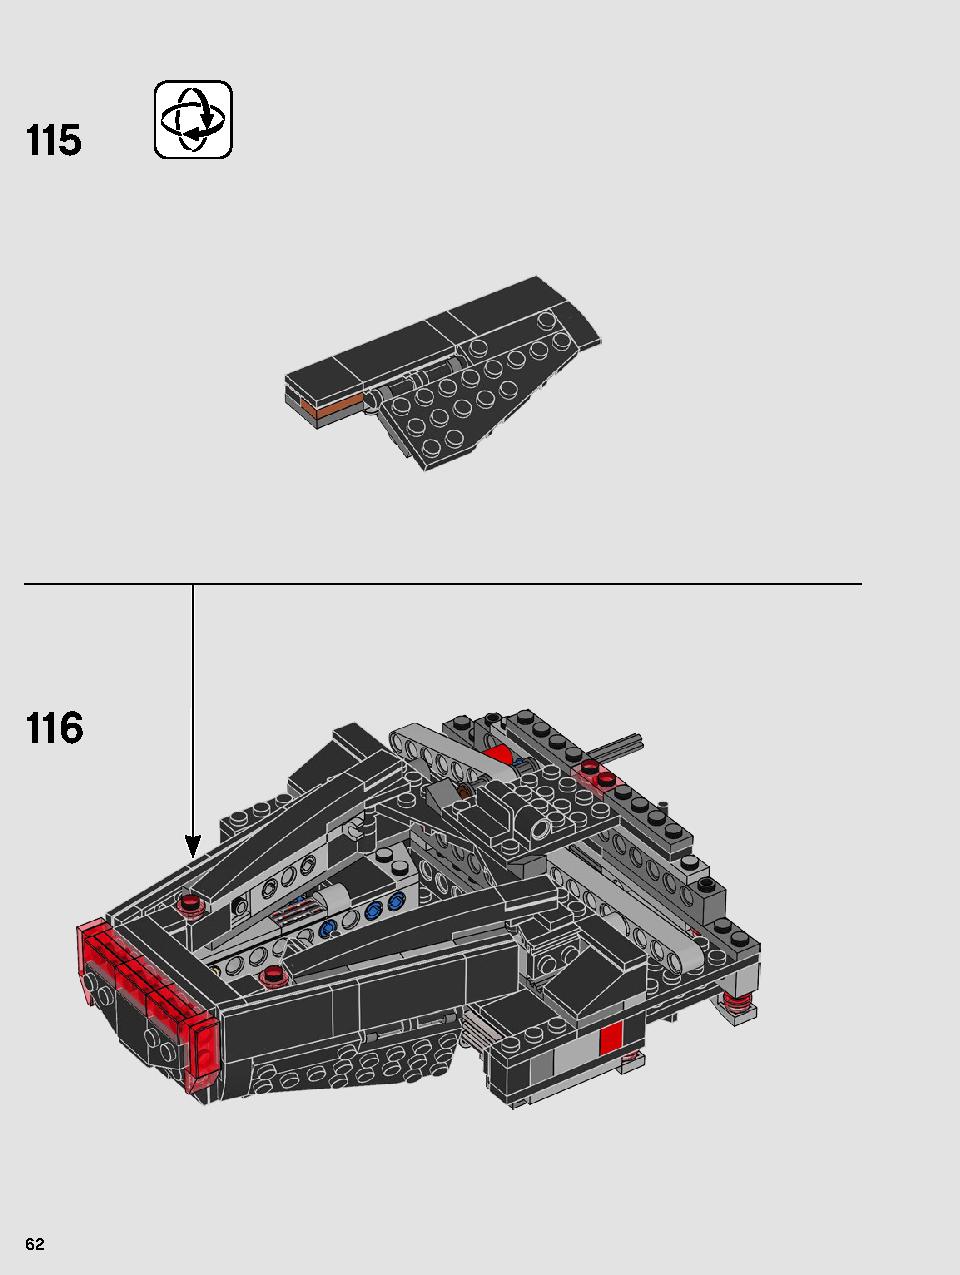 스타워즈 카일로 렌의 셔틀™ 75256 레고 세트 제품정보 레고 조립설명서 62 page